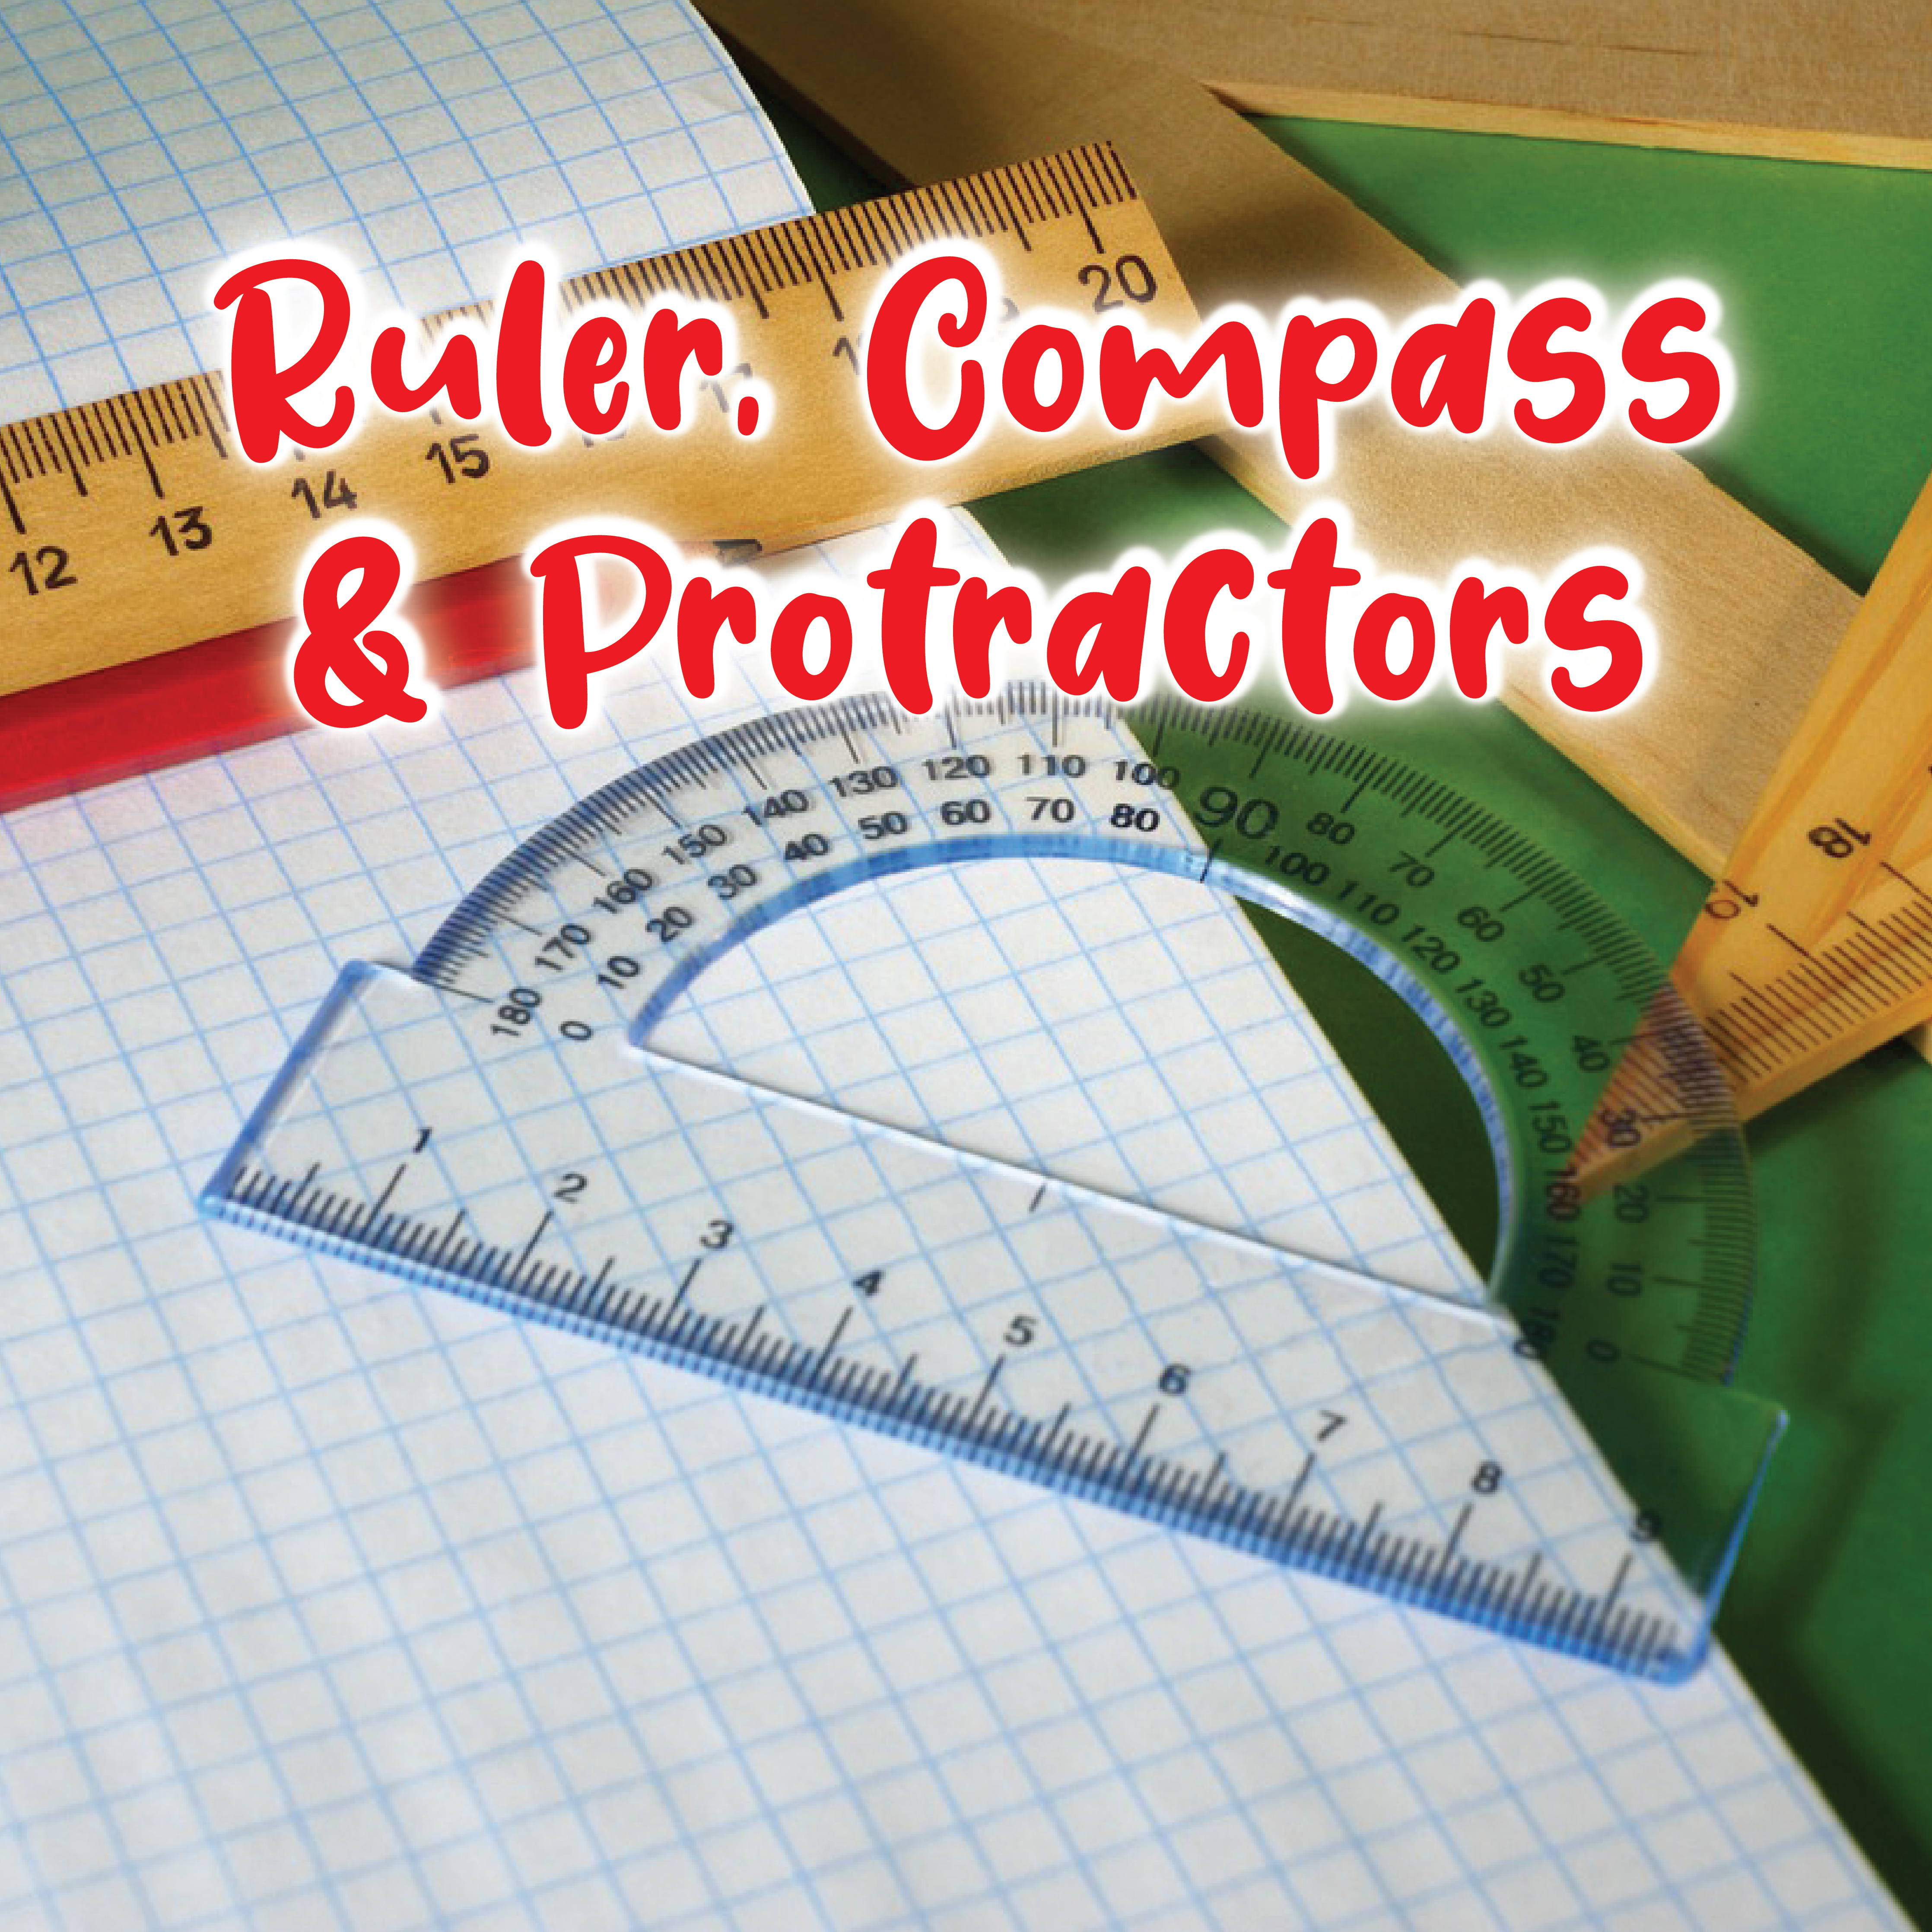 Alvin Rulers, Compasses & Protractors in School Supplies